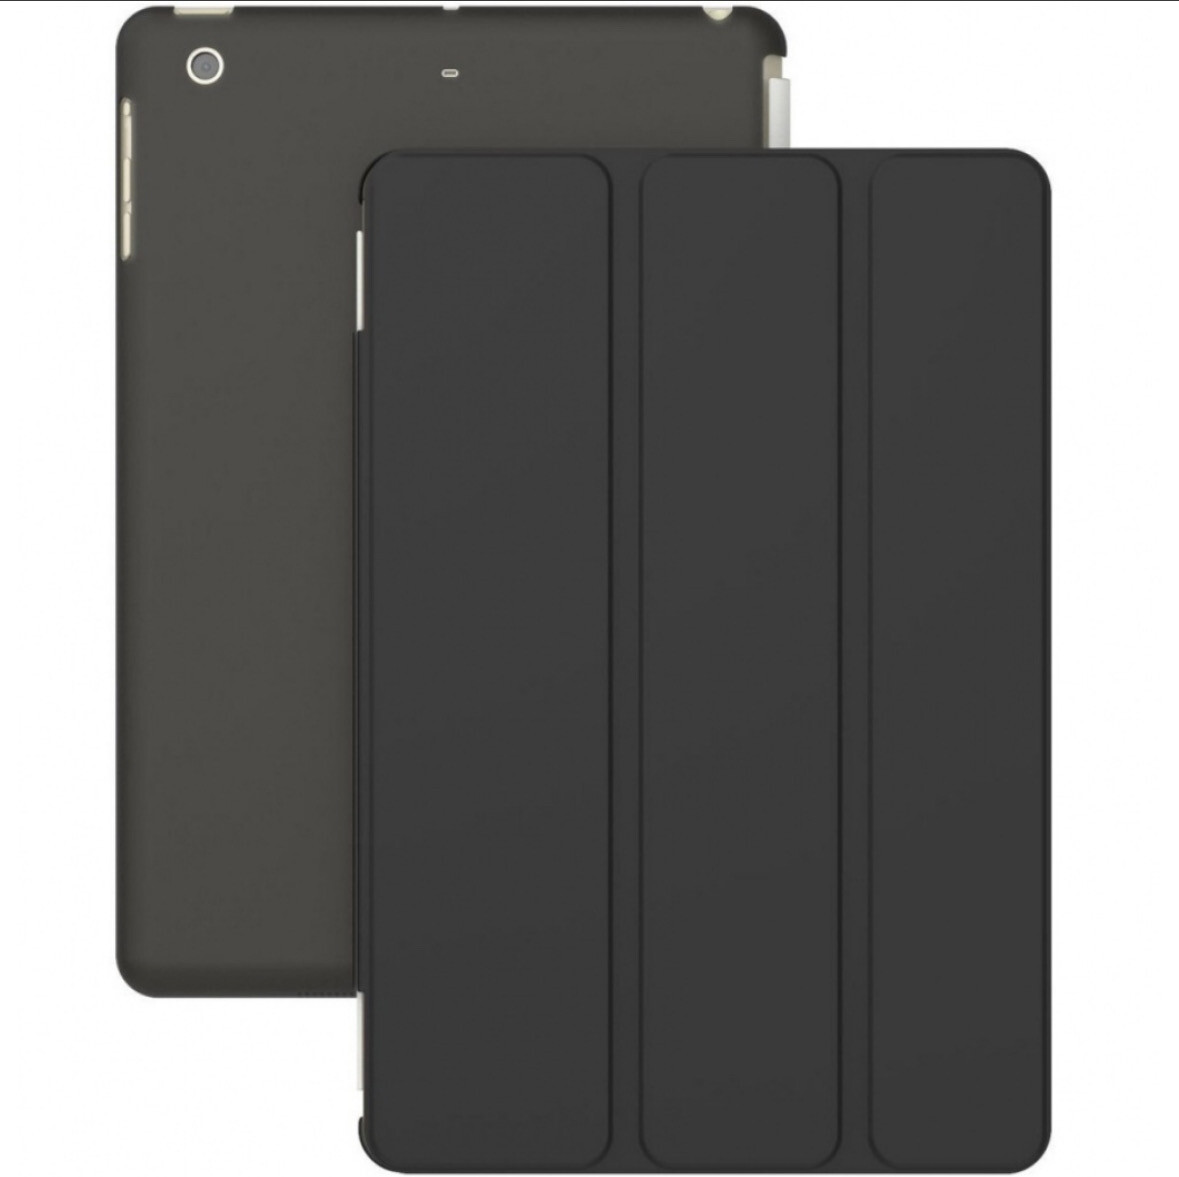 Carcasa plegable para iPad Air, iPad Air 2, iPad 5 & iPad 6